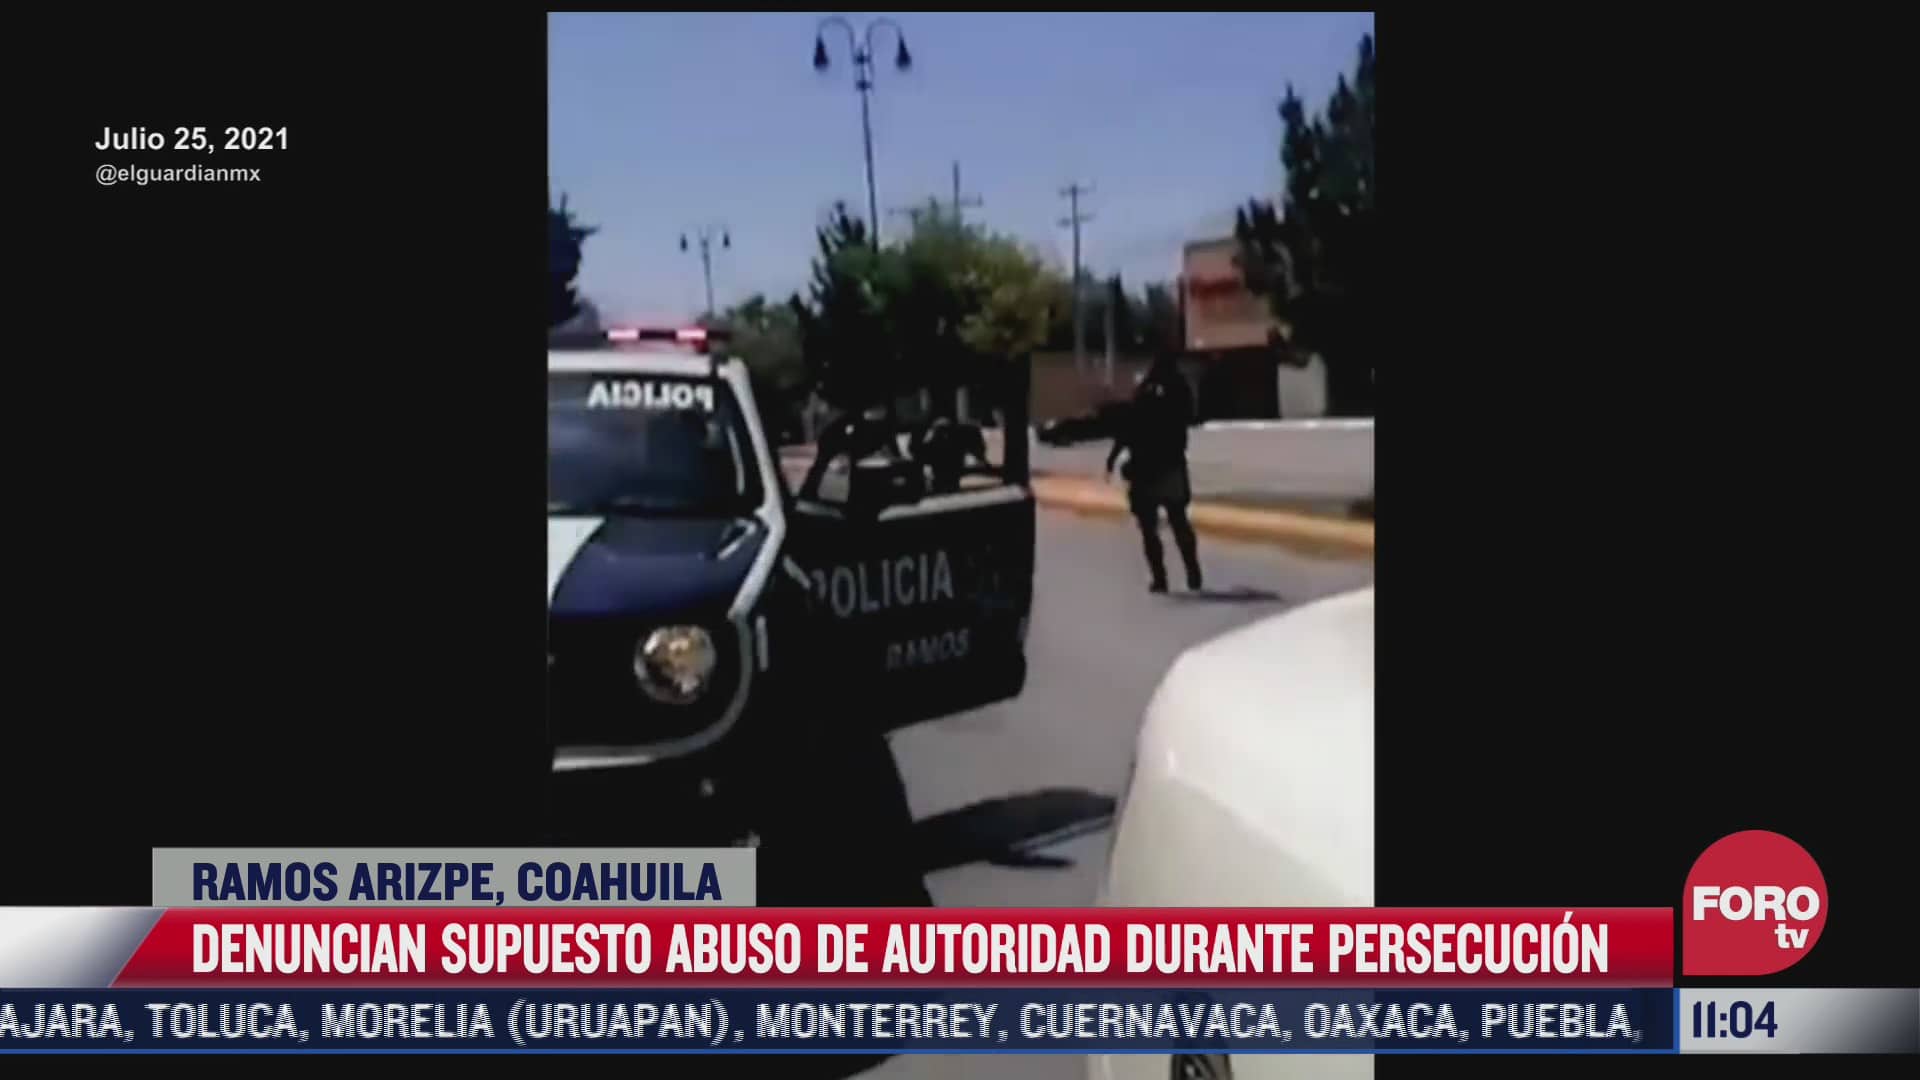 denuncian supuesto abuso policial durante persecucion en ramos arizpe coahuila